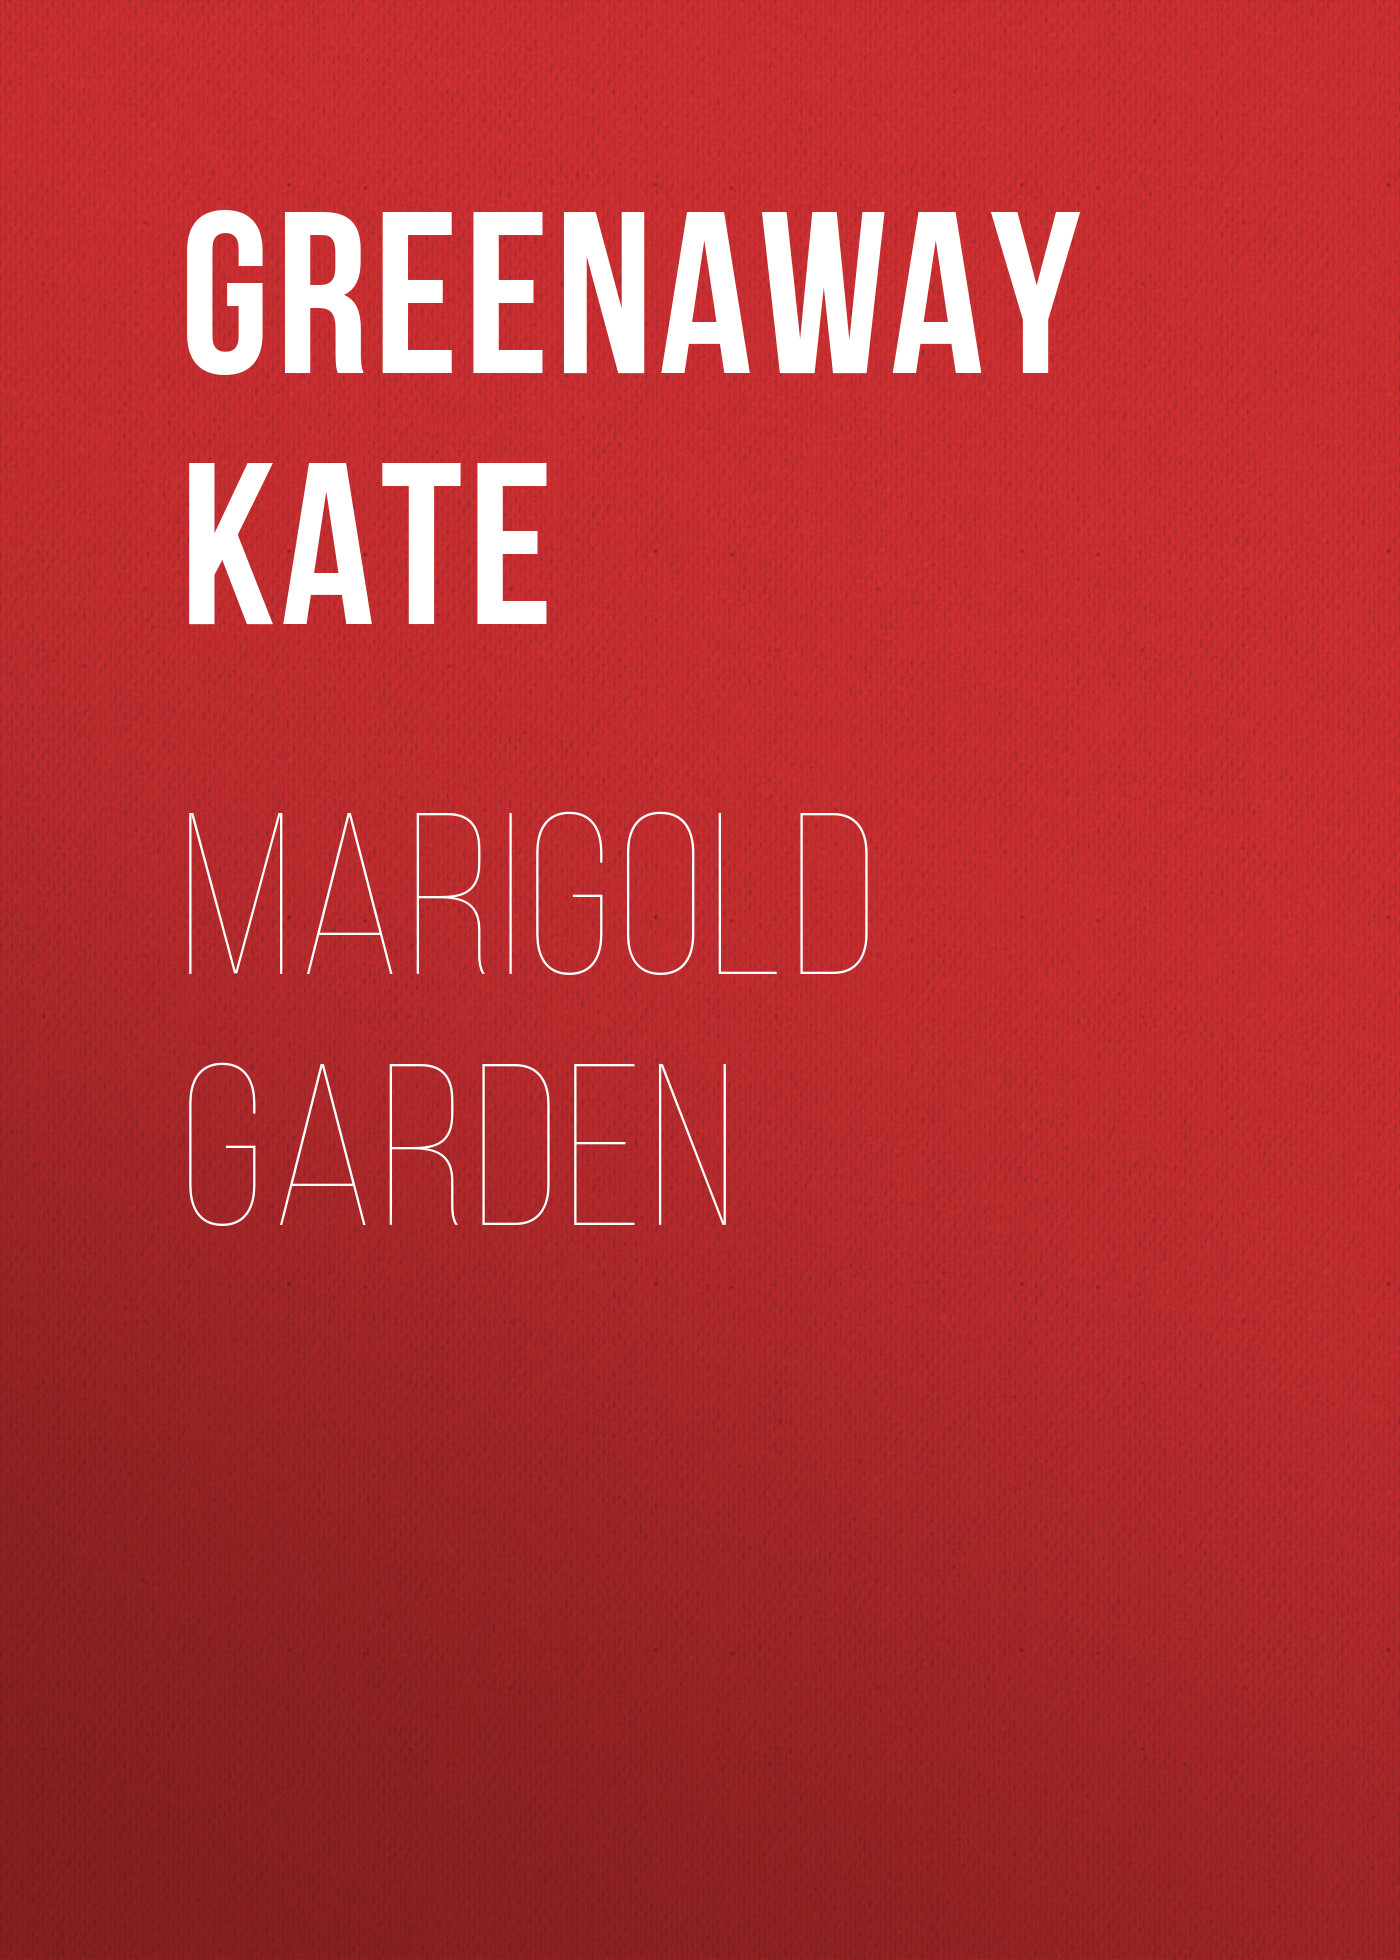 Книга Marigold Garden из серии , созданная Kate Greenaway, может относится к жанру Детские стихи, Зарубежная старинная литература, Зарубежная классика, Зарубежные детские книги. Стоимость электронной книги Marigold Garden с идентификатором 36365262 составляет 0 руб.